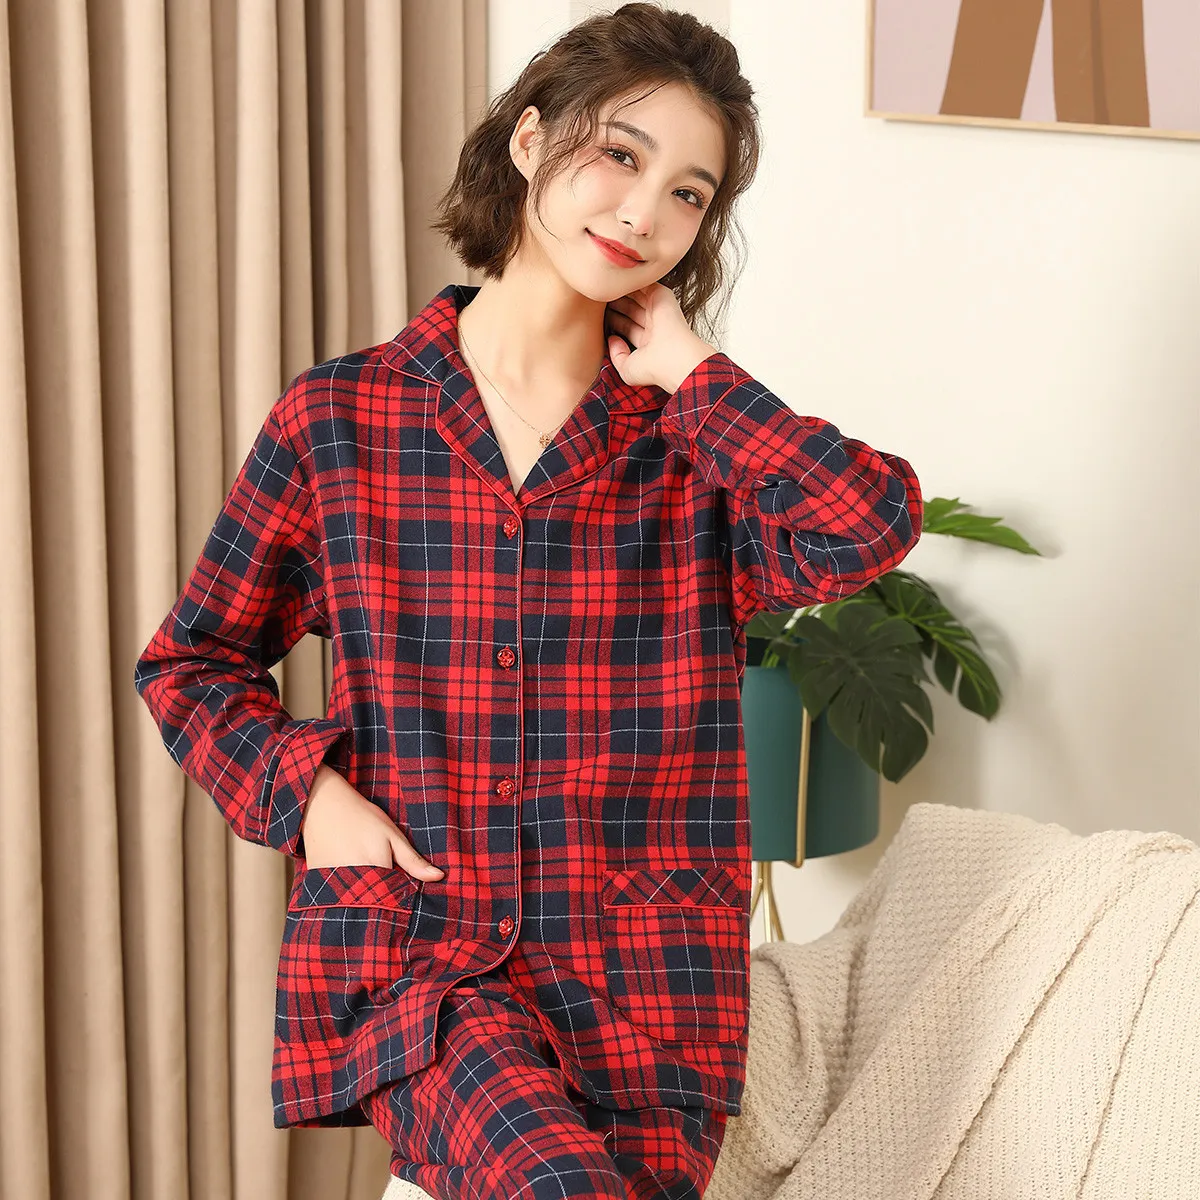 Women's Sleepwear est 100% Cotton Lovers Pajamas Sets Women Men Spring Long Sleeve Casual Soft Sleepwear Plaid Design Homewear Loungewear 230309